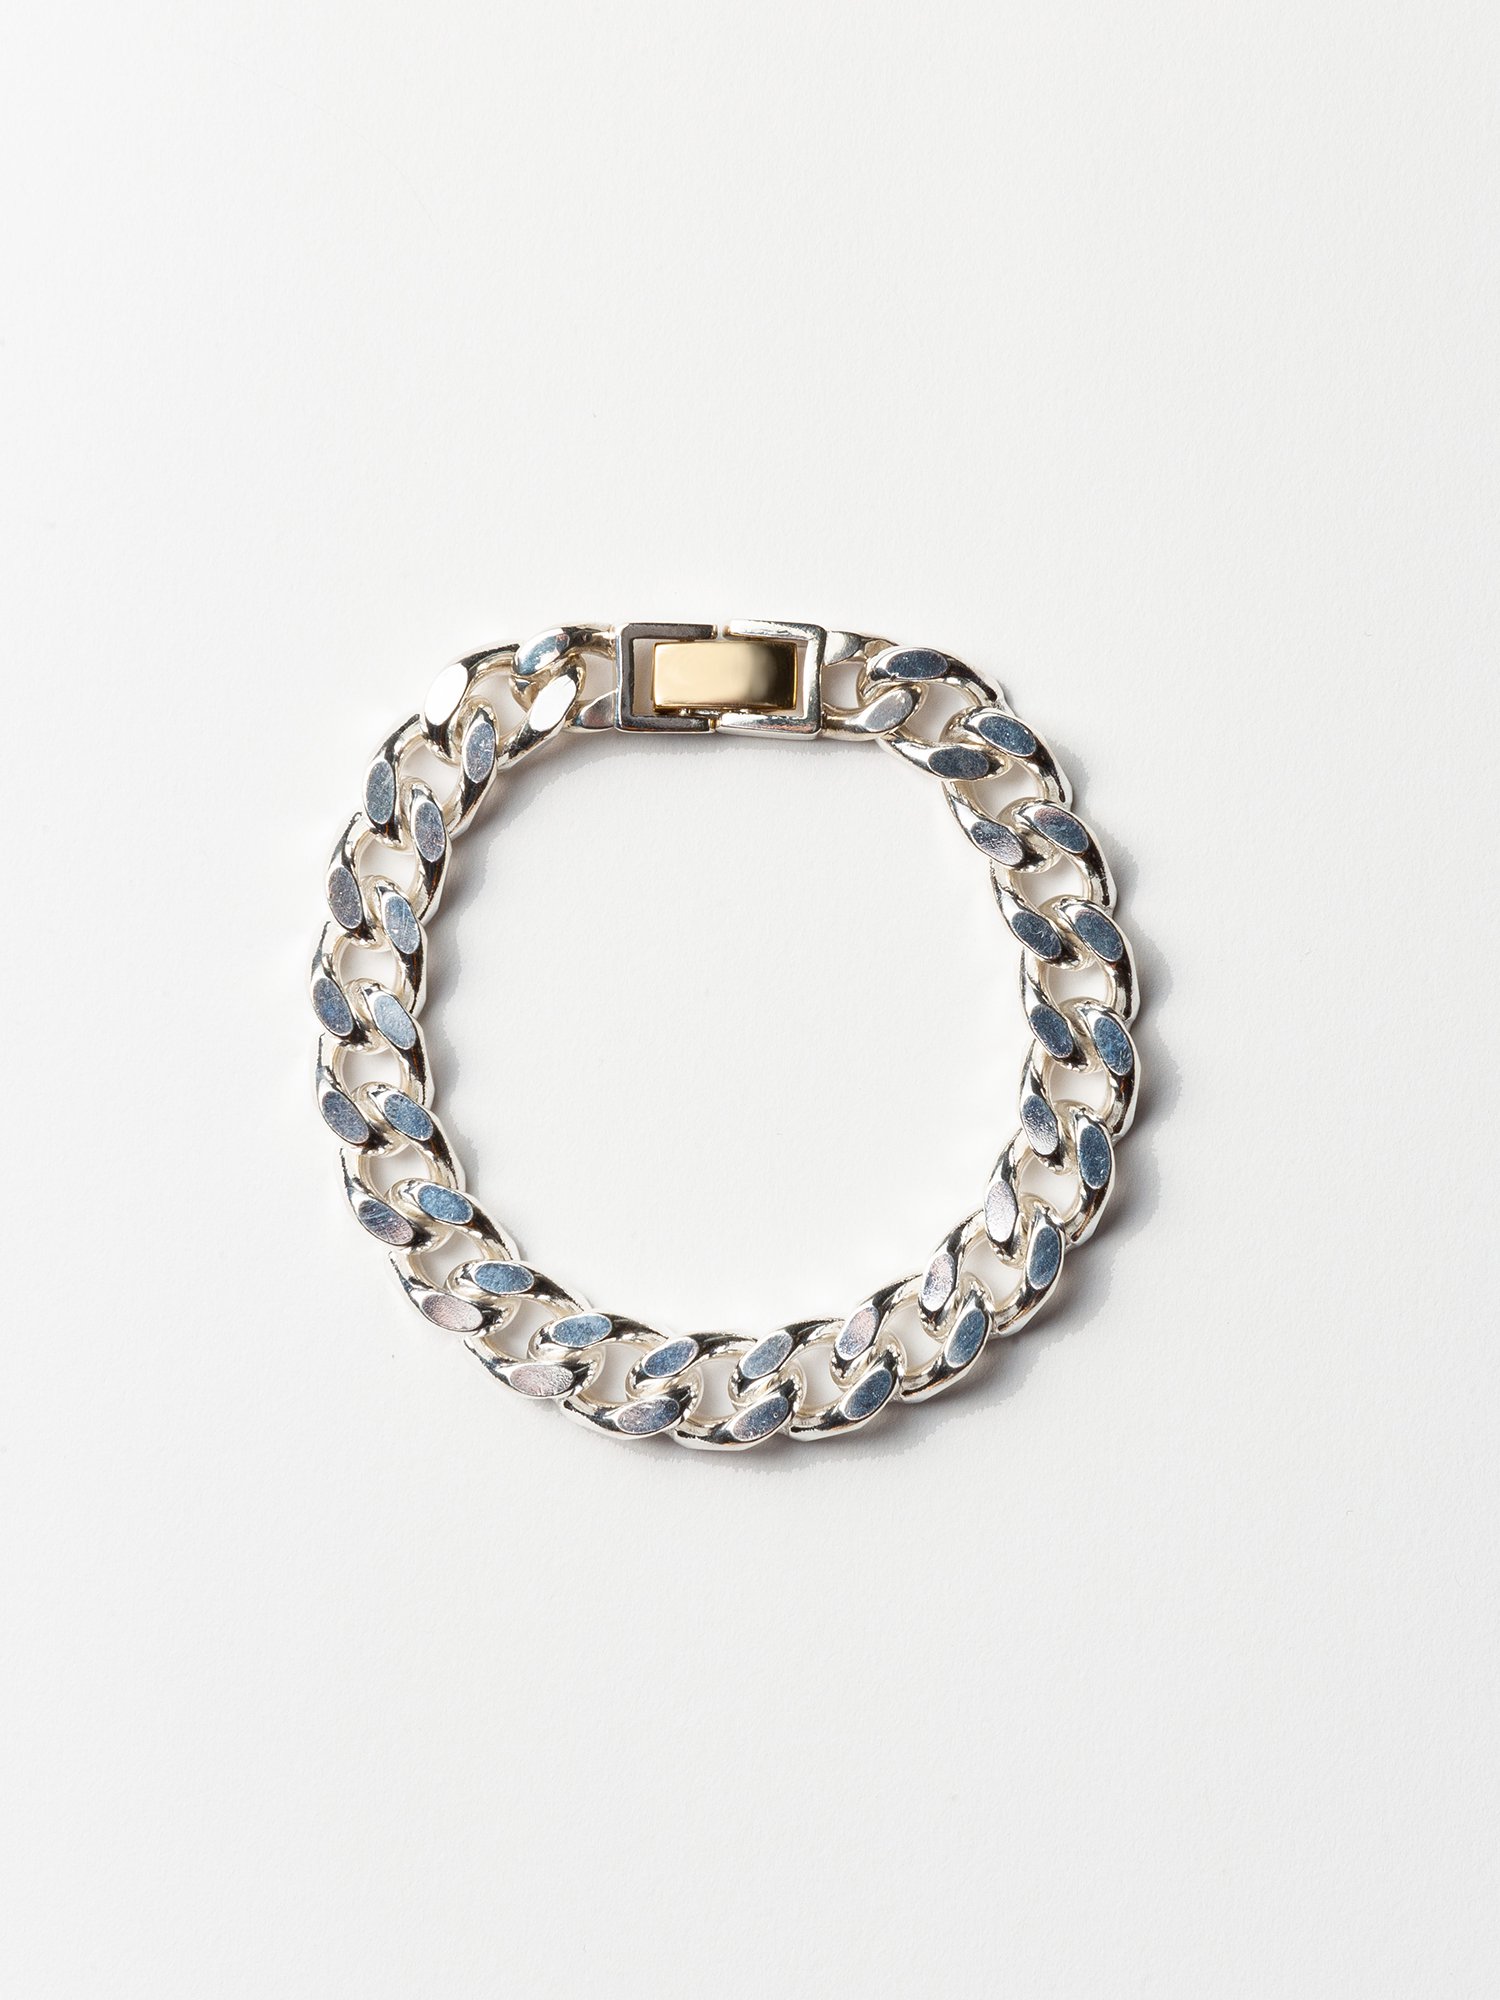 ARTEMIS / Gourmette bracelet / 200mm - GIGI Jewelry